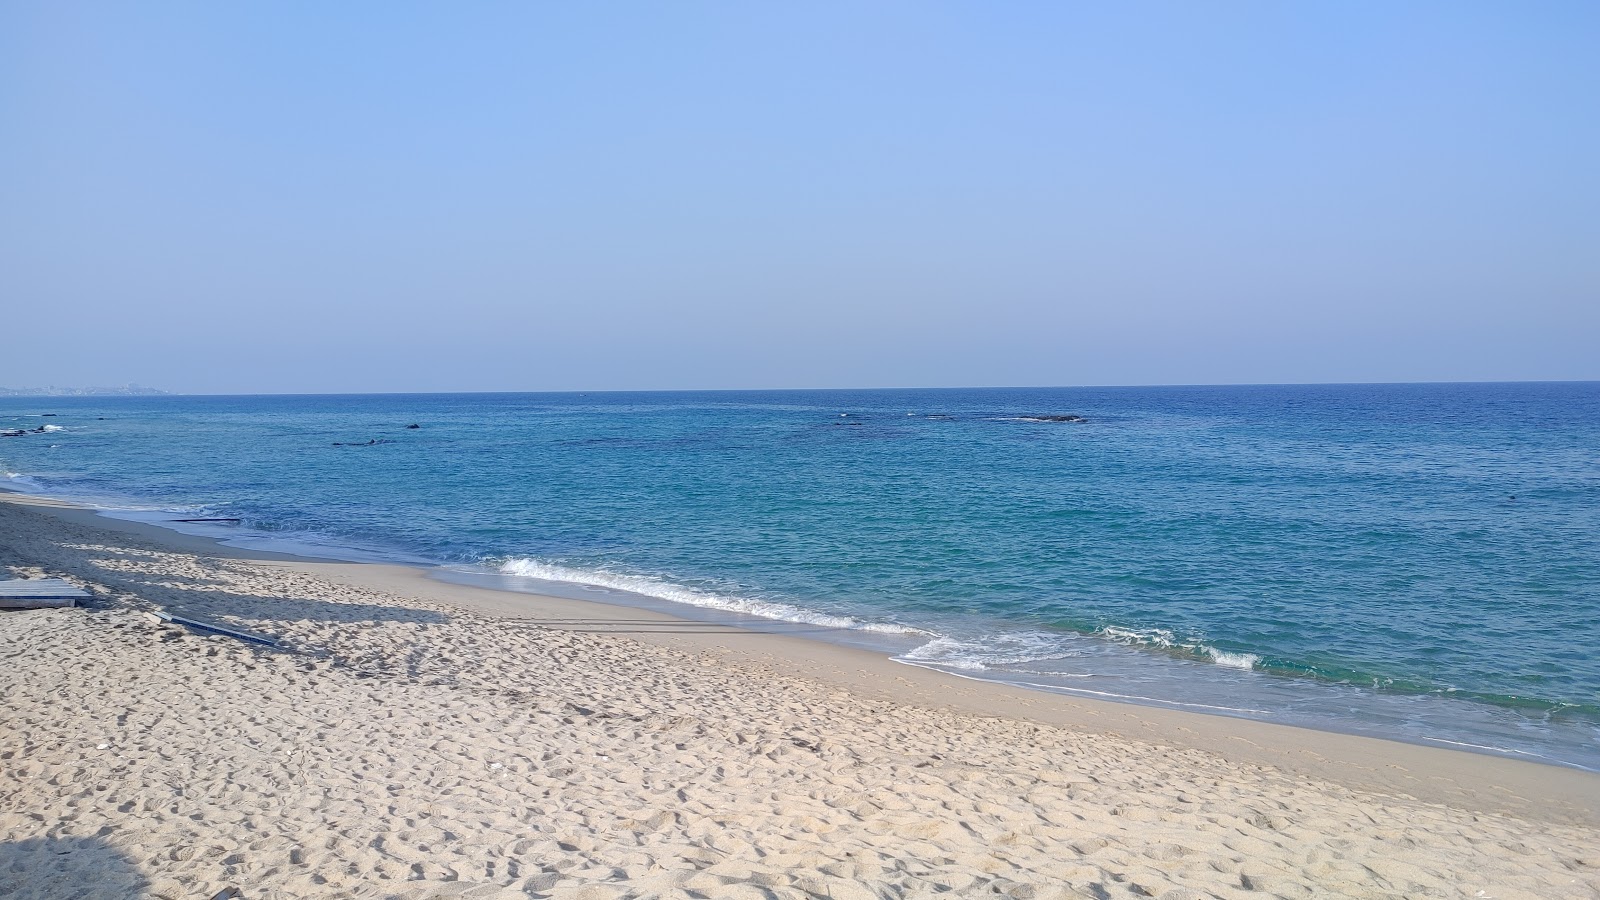 Fotografie cu Yeongok Beach zonele de facilități